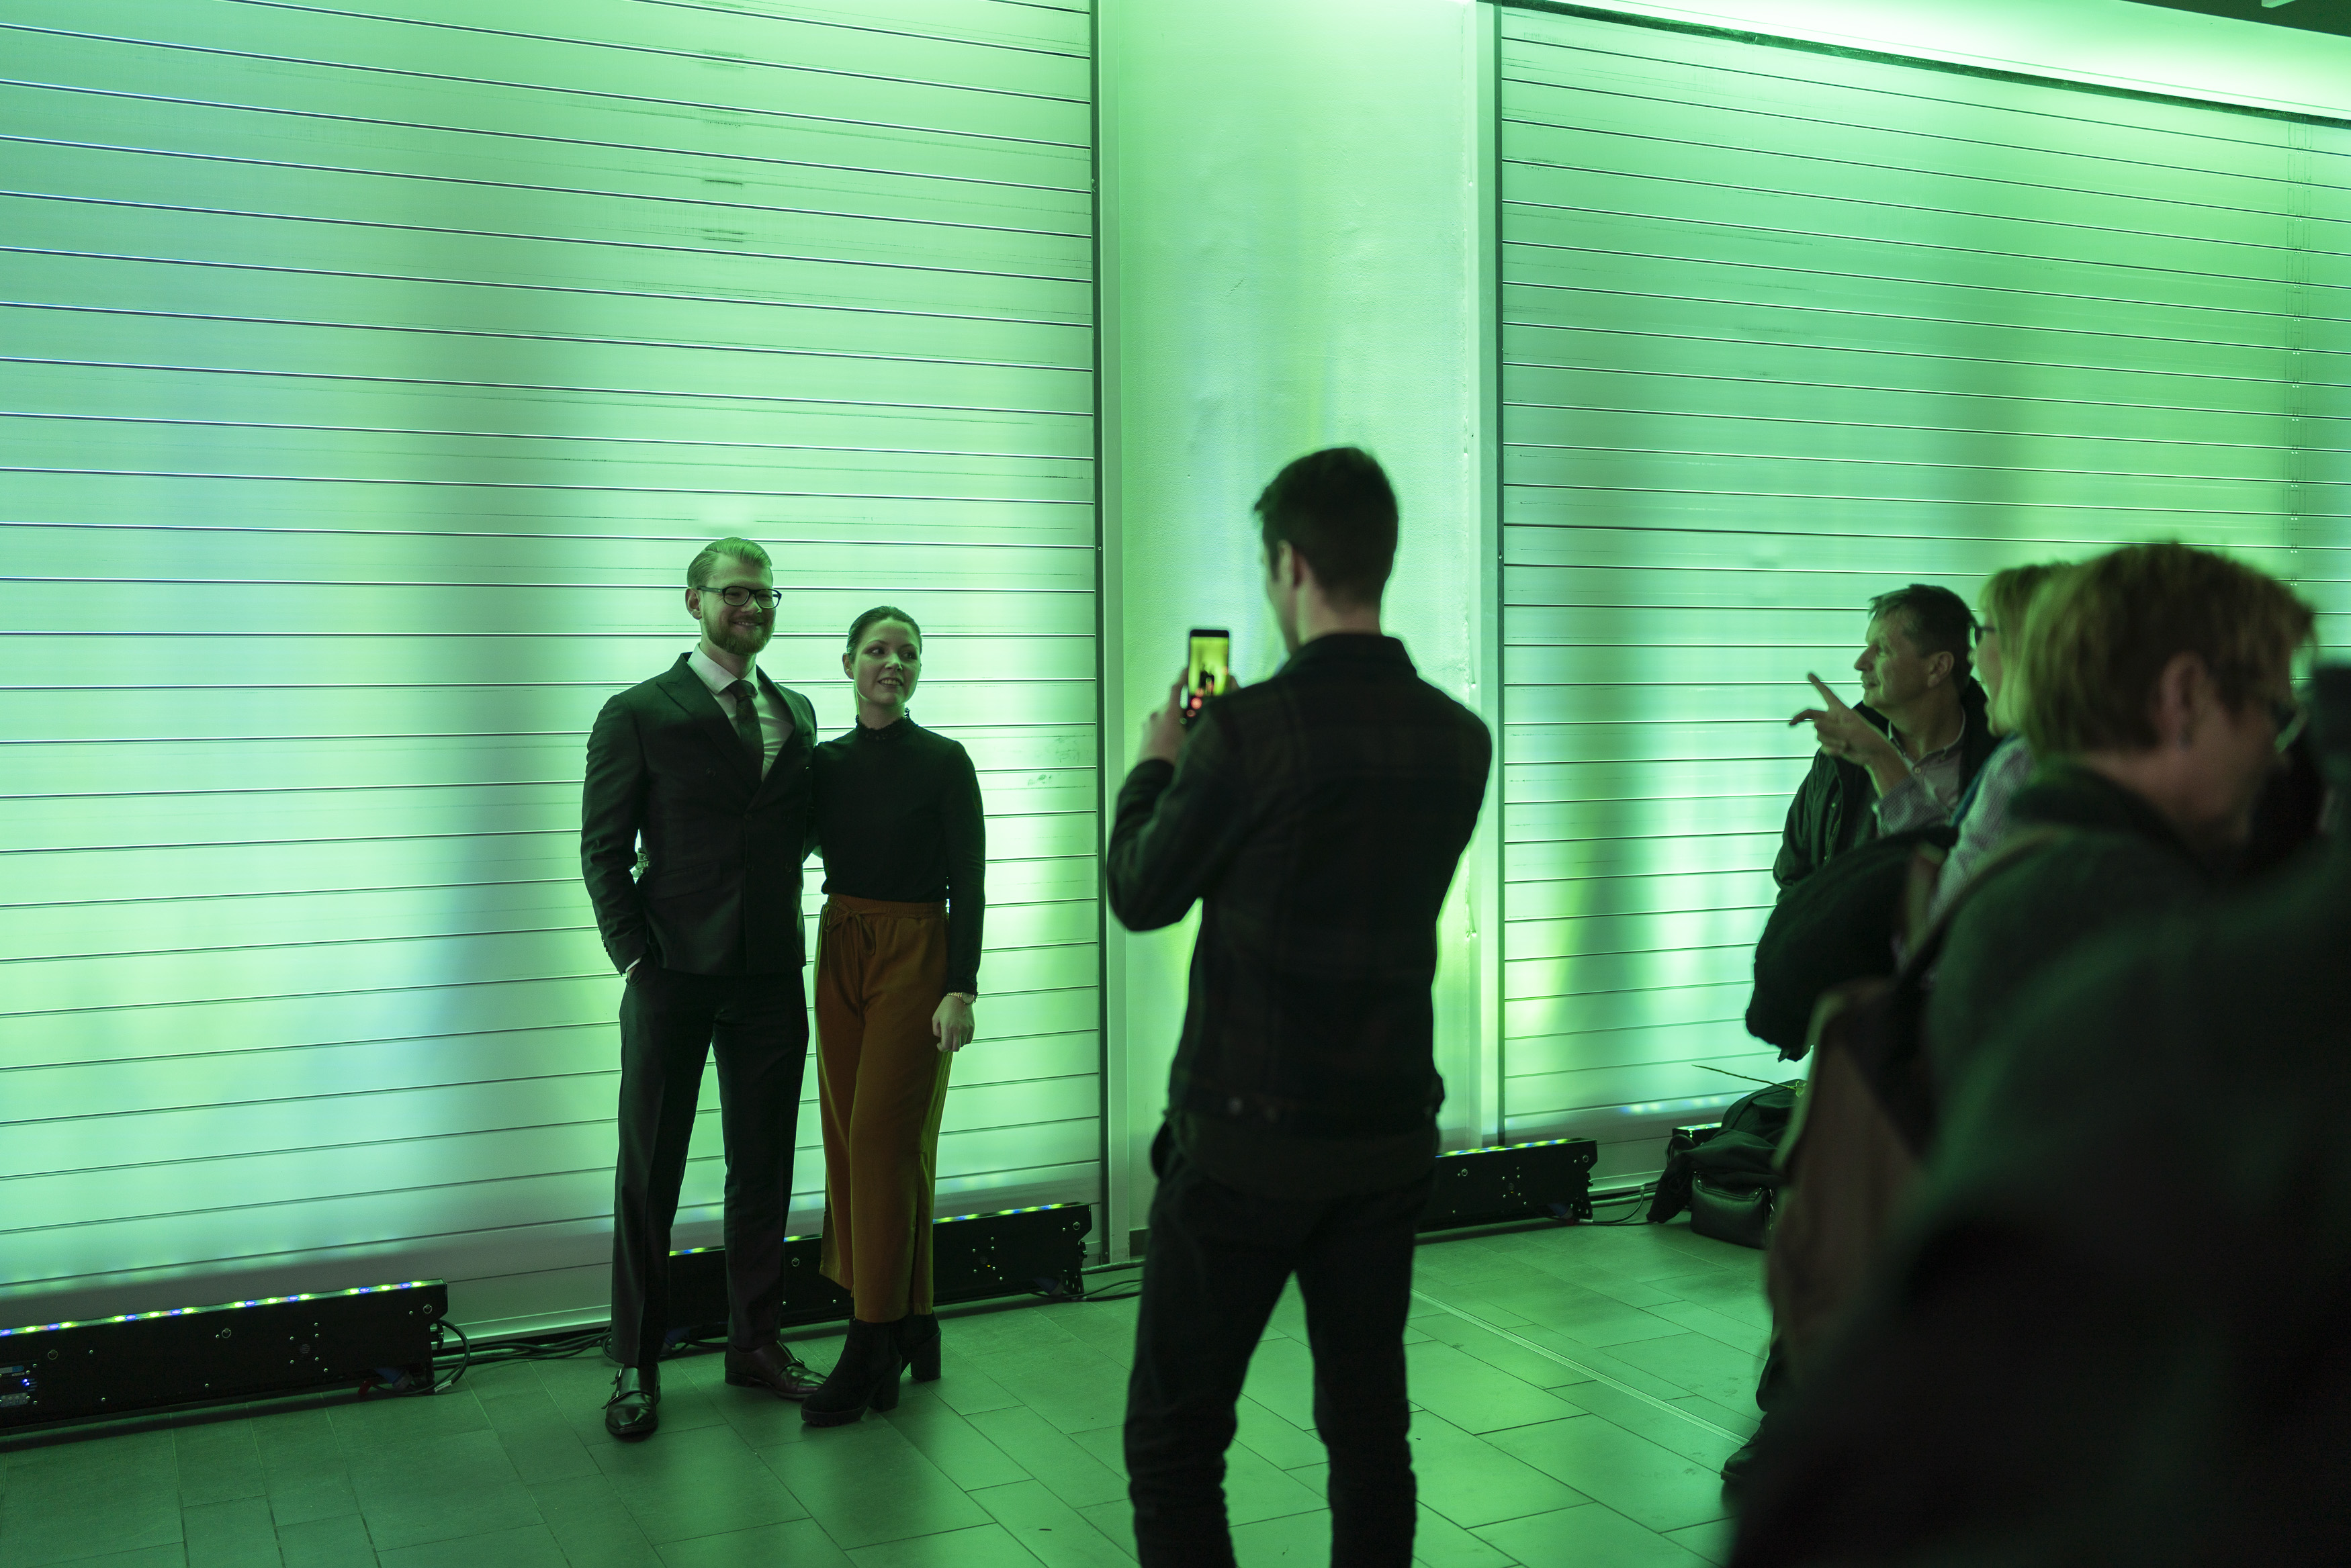 Zwei Gäste werden vor einer grün angeleuchteten Wand fotografiert